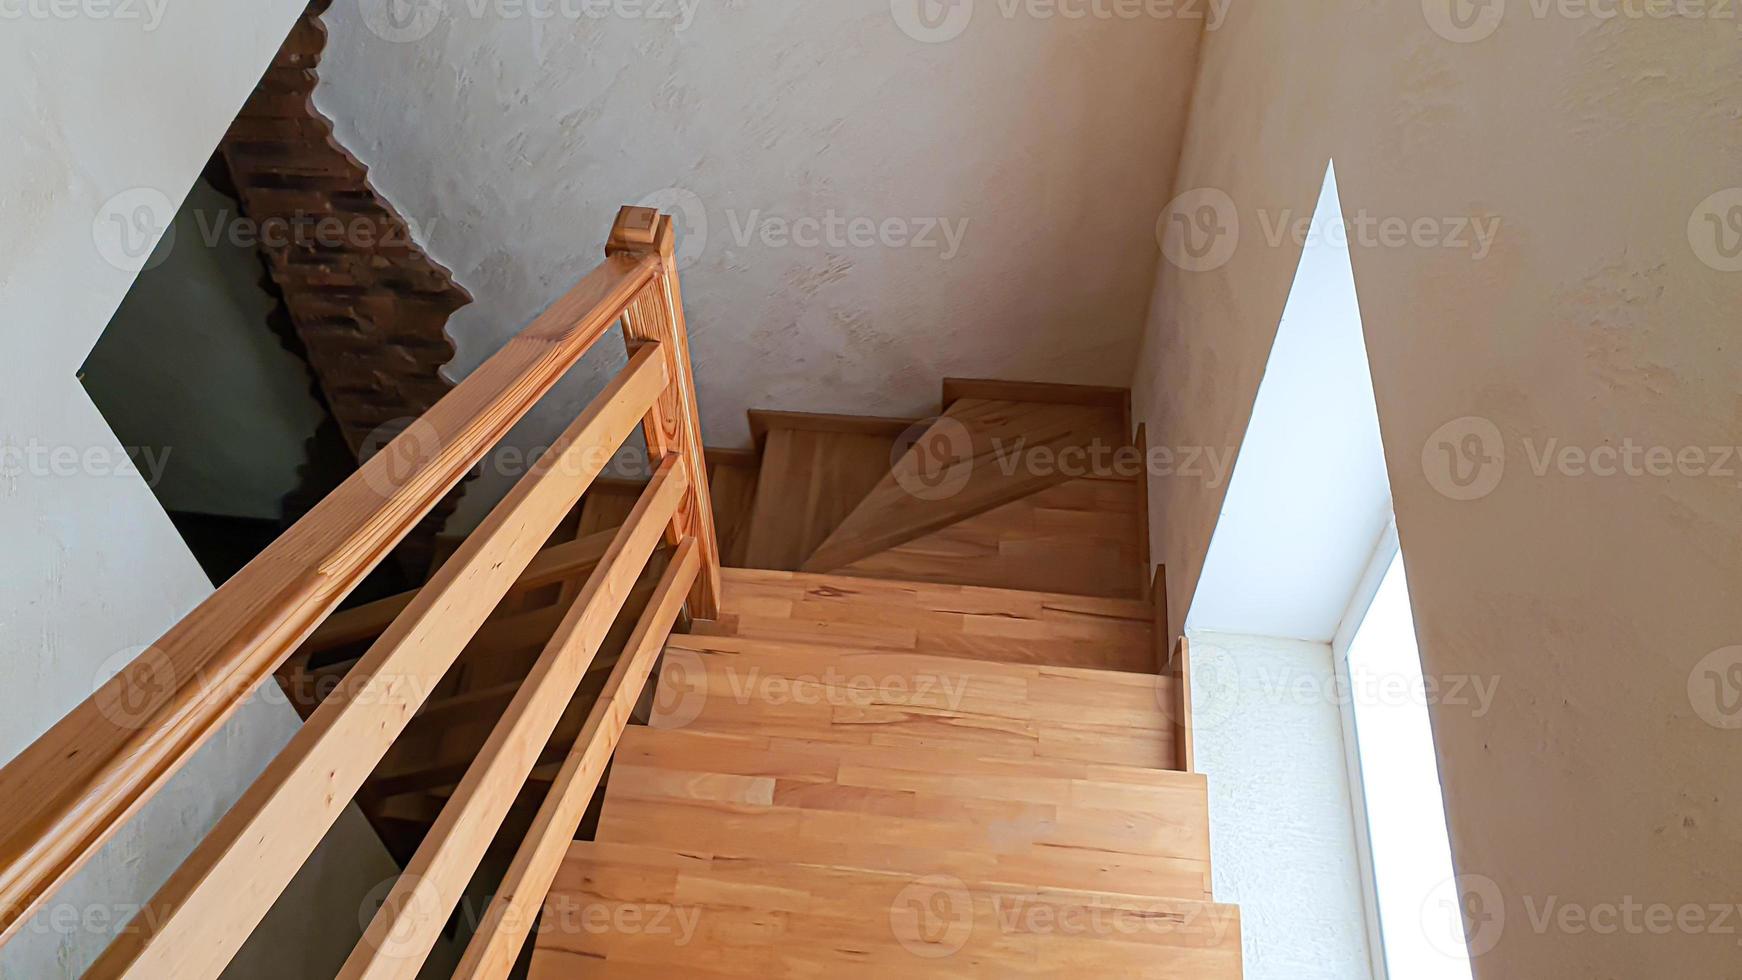 itens de interior. escada de madeira, lâmpada na parede. foto